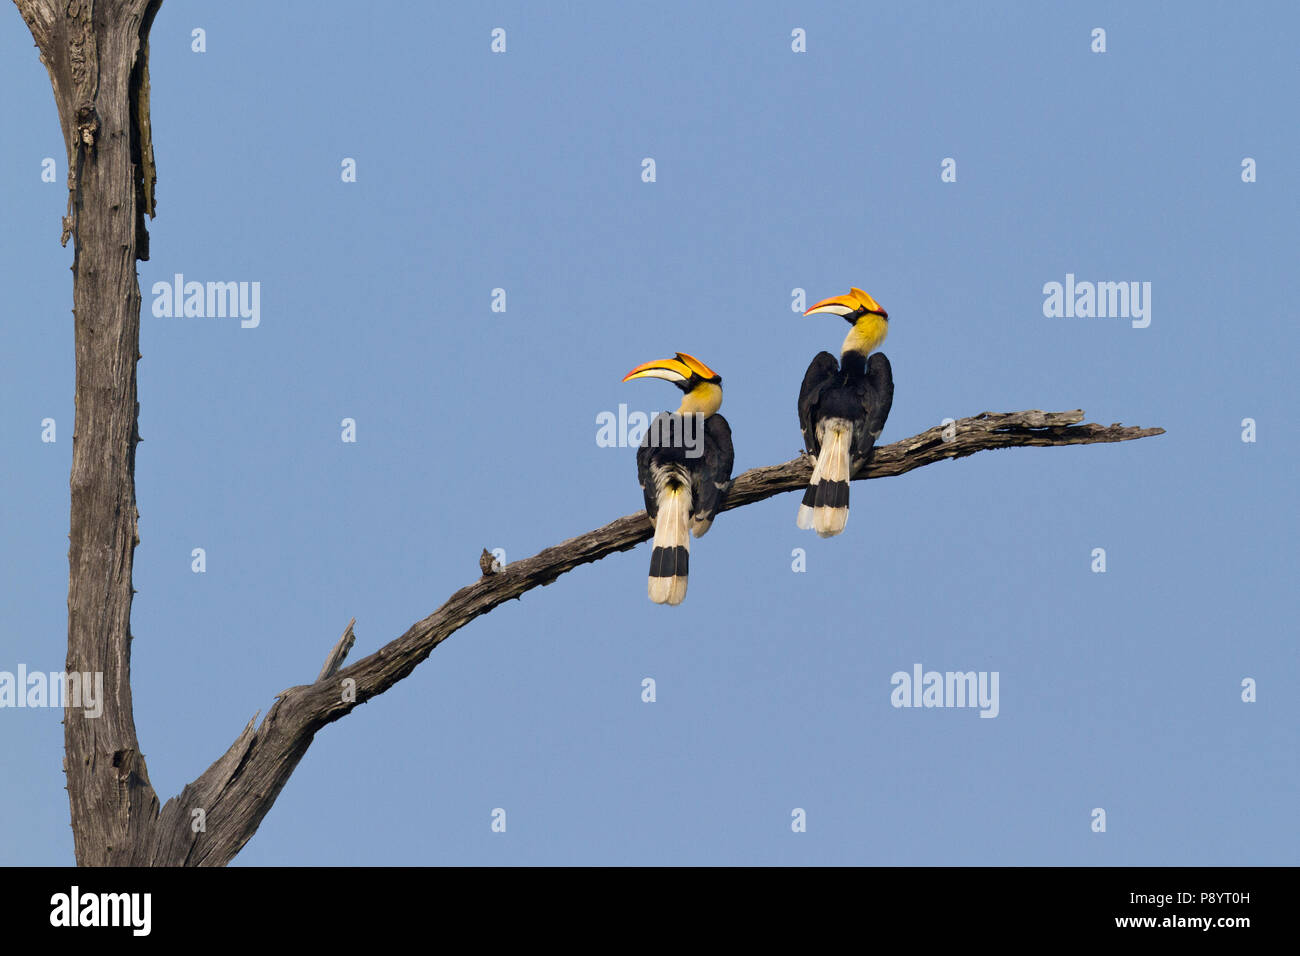 Great Indian Hornbill or Buceros bicornis at Kaziranga National Park, Assam. Stock Photo